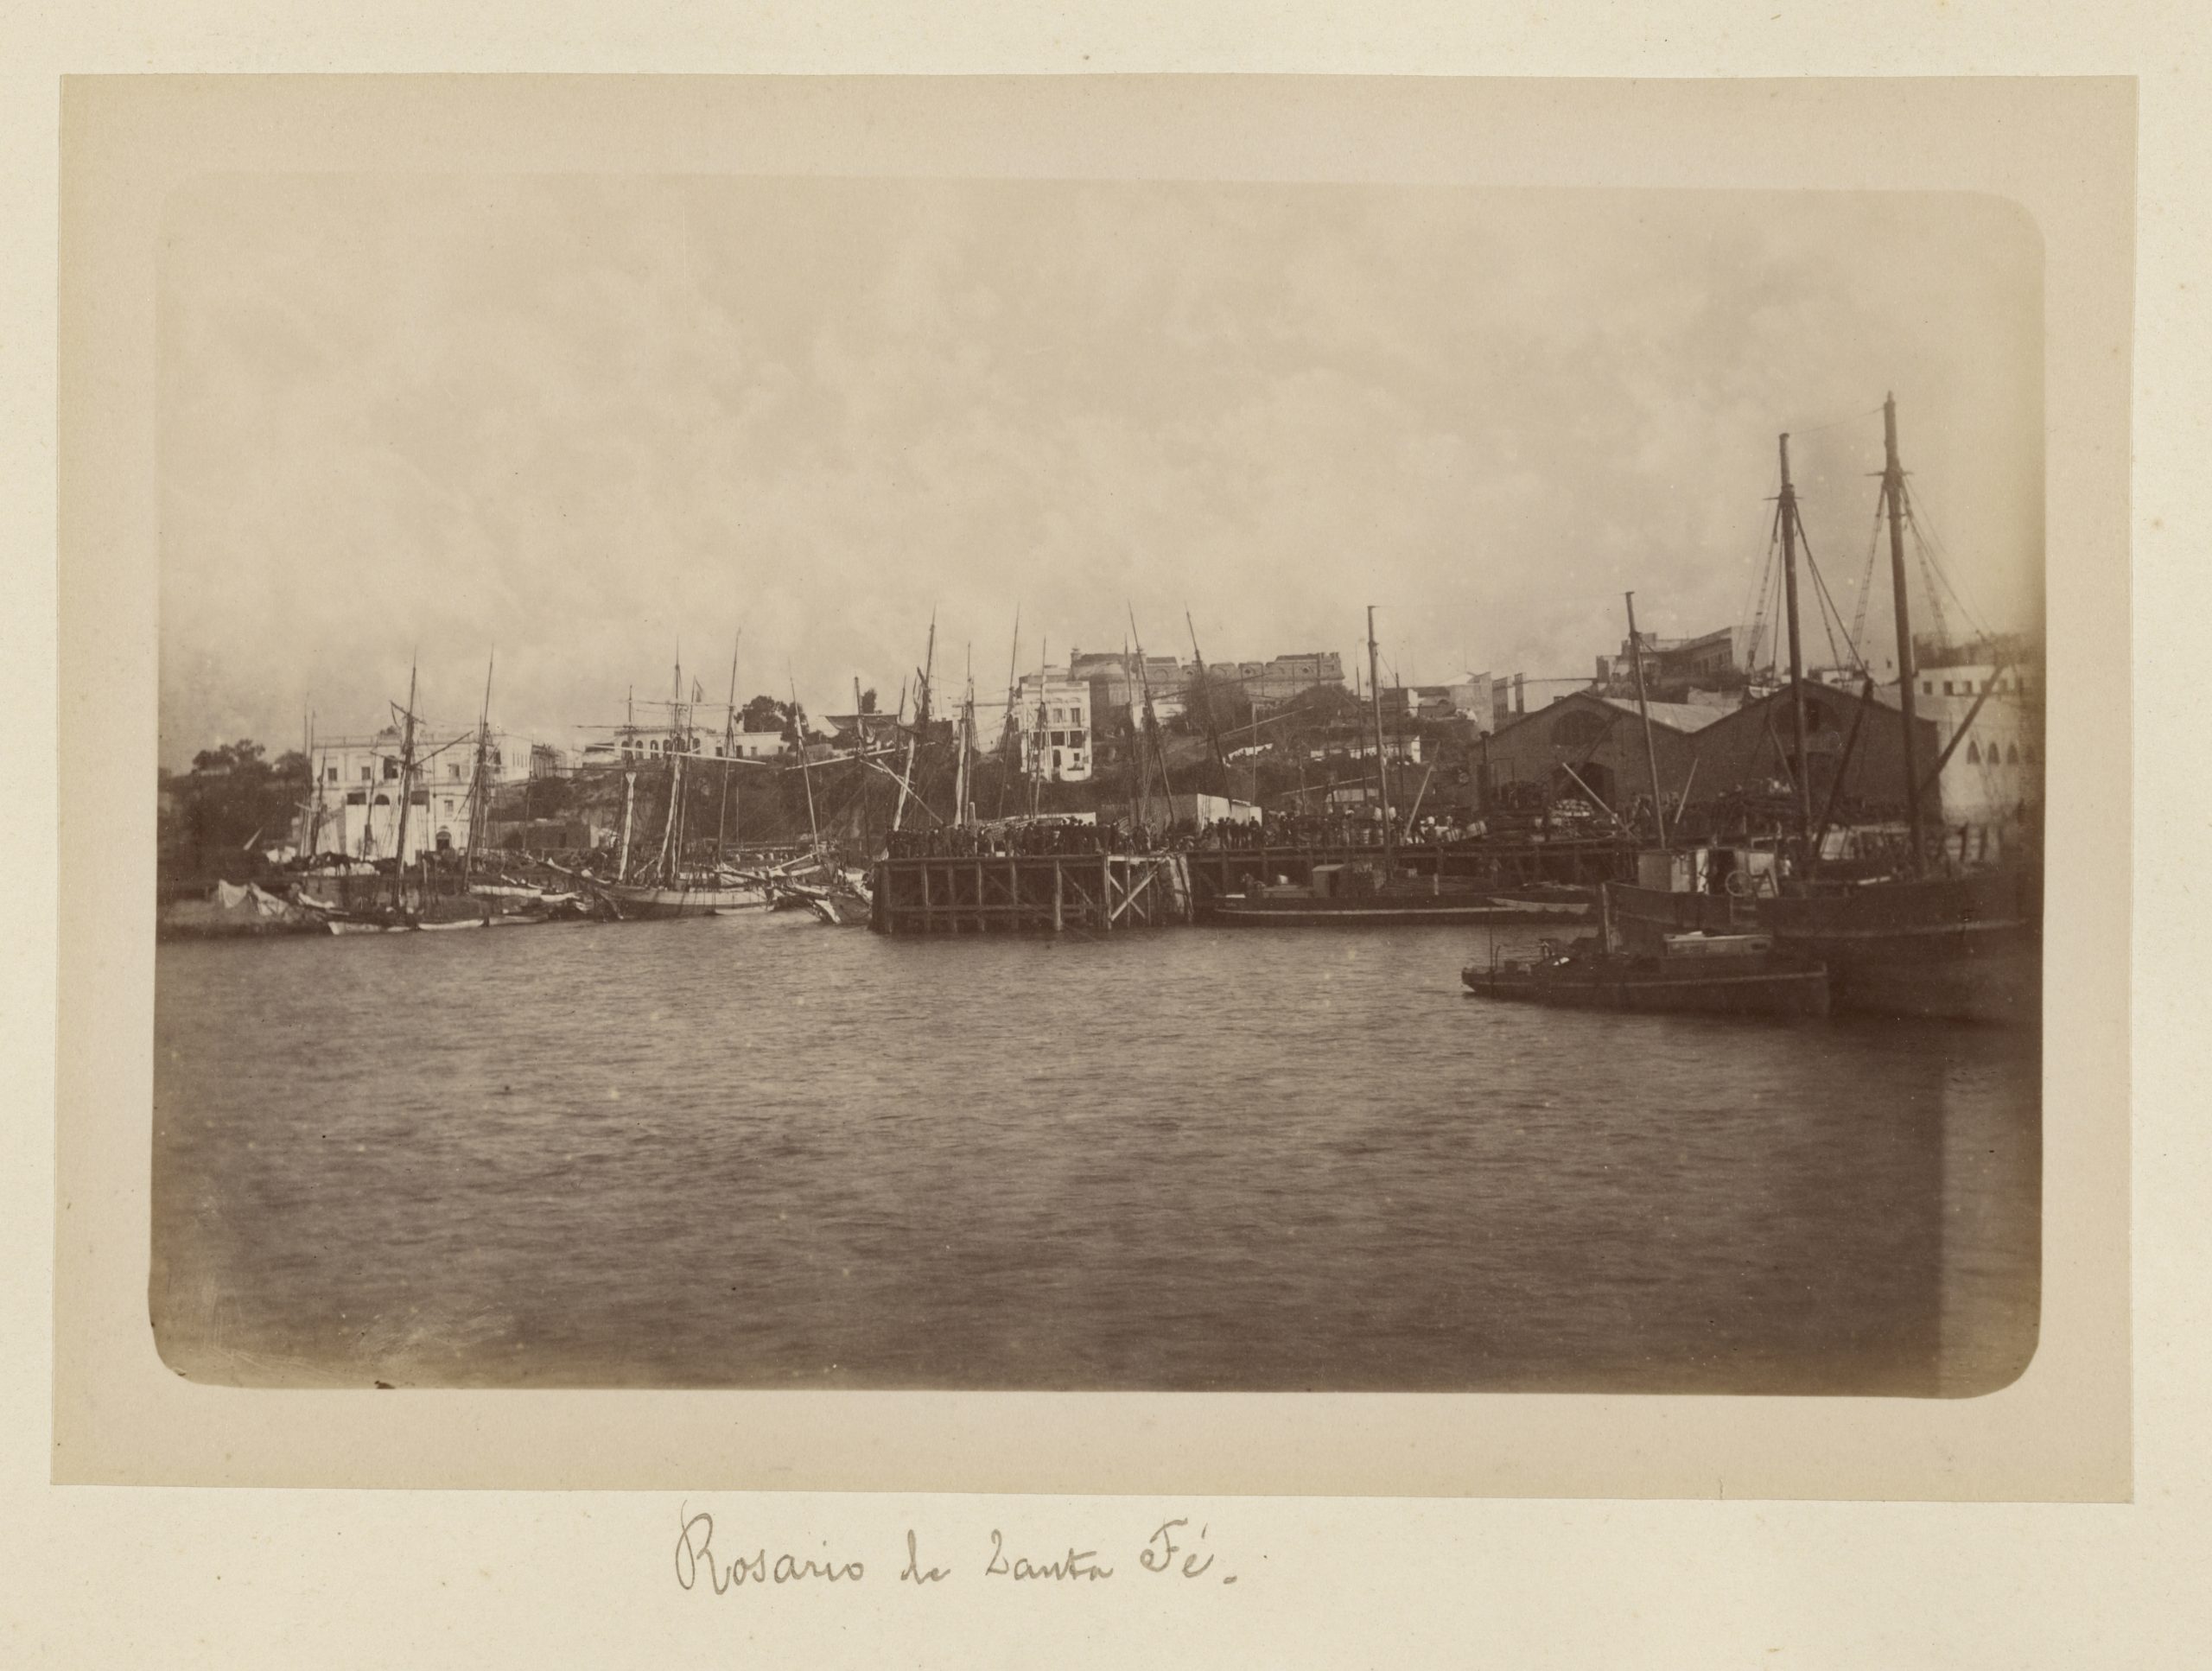 Albumen silver print of Rosario de Santa Fé in 1884 showing ships in the harbour.